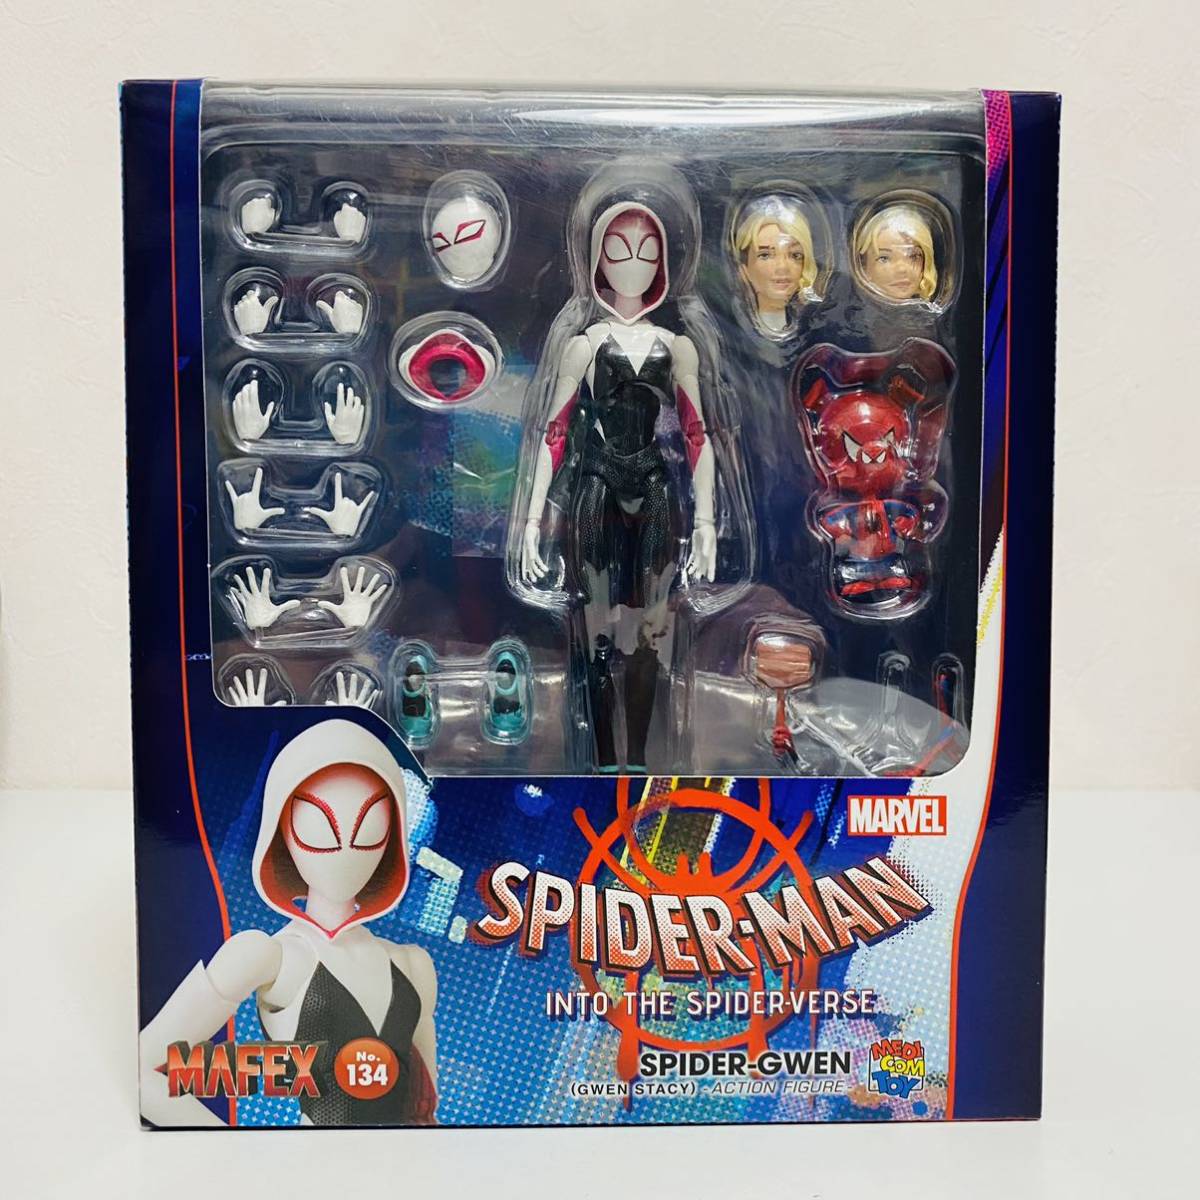 [ ultimate beautiful goods ]MEDICOM TOYmeti com toy MAFEX muff .ksNo.134 Spider-Man SPIDER-GWEN Spider gwen figure 